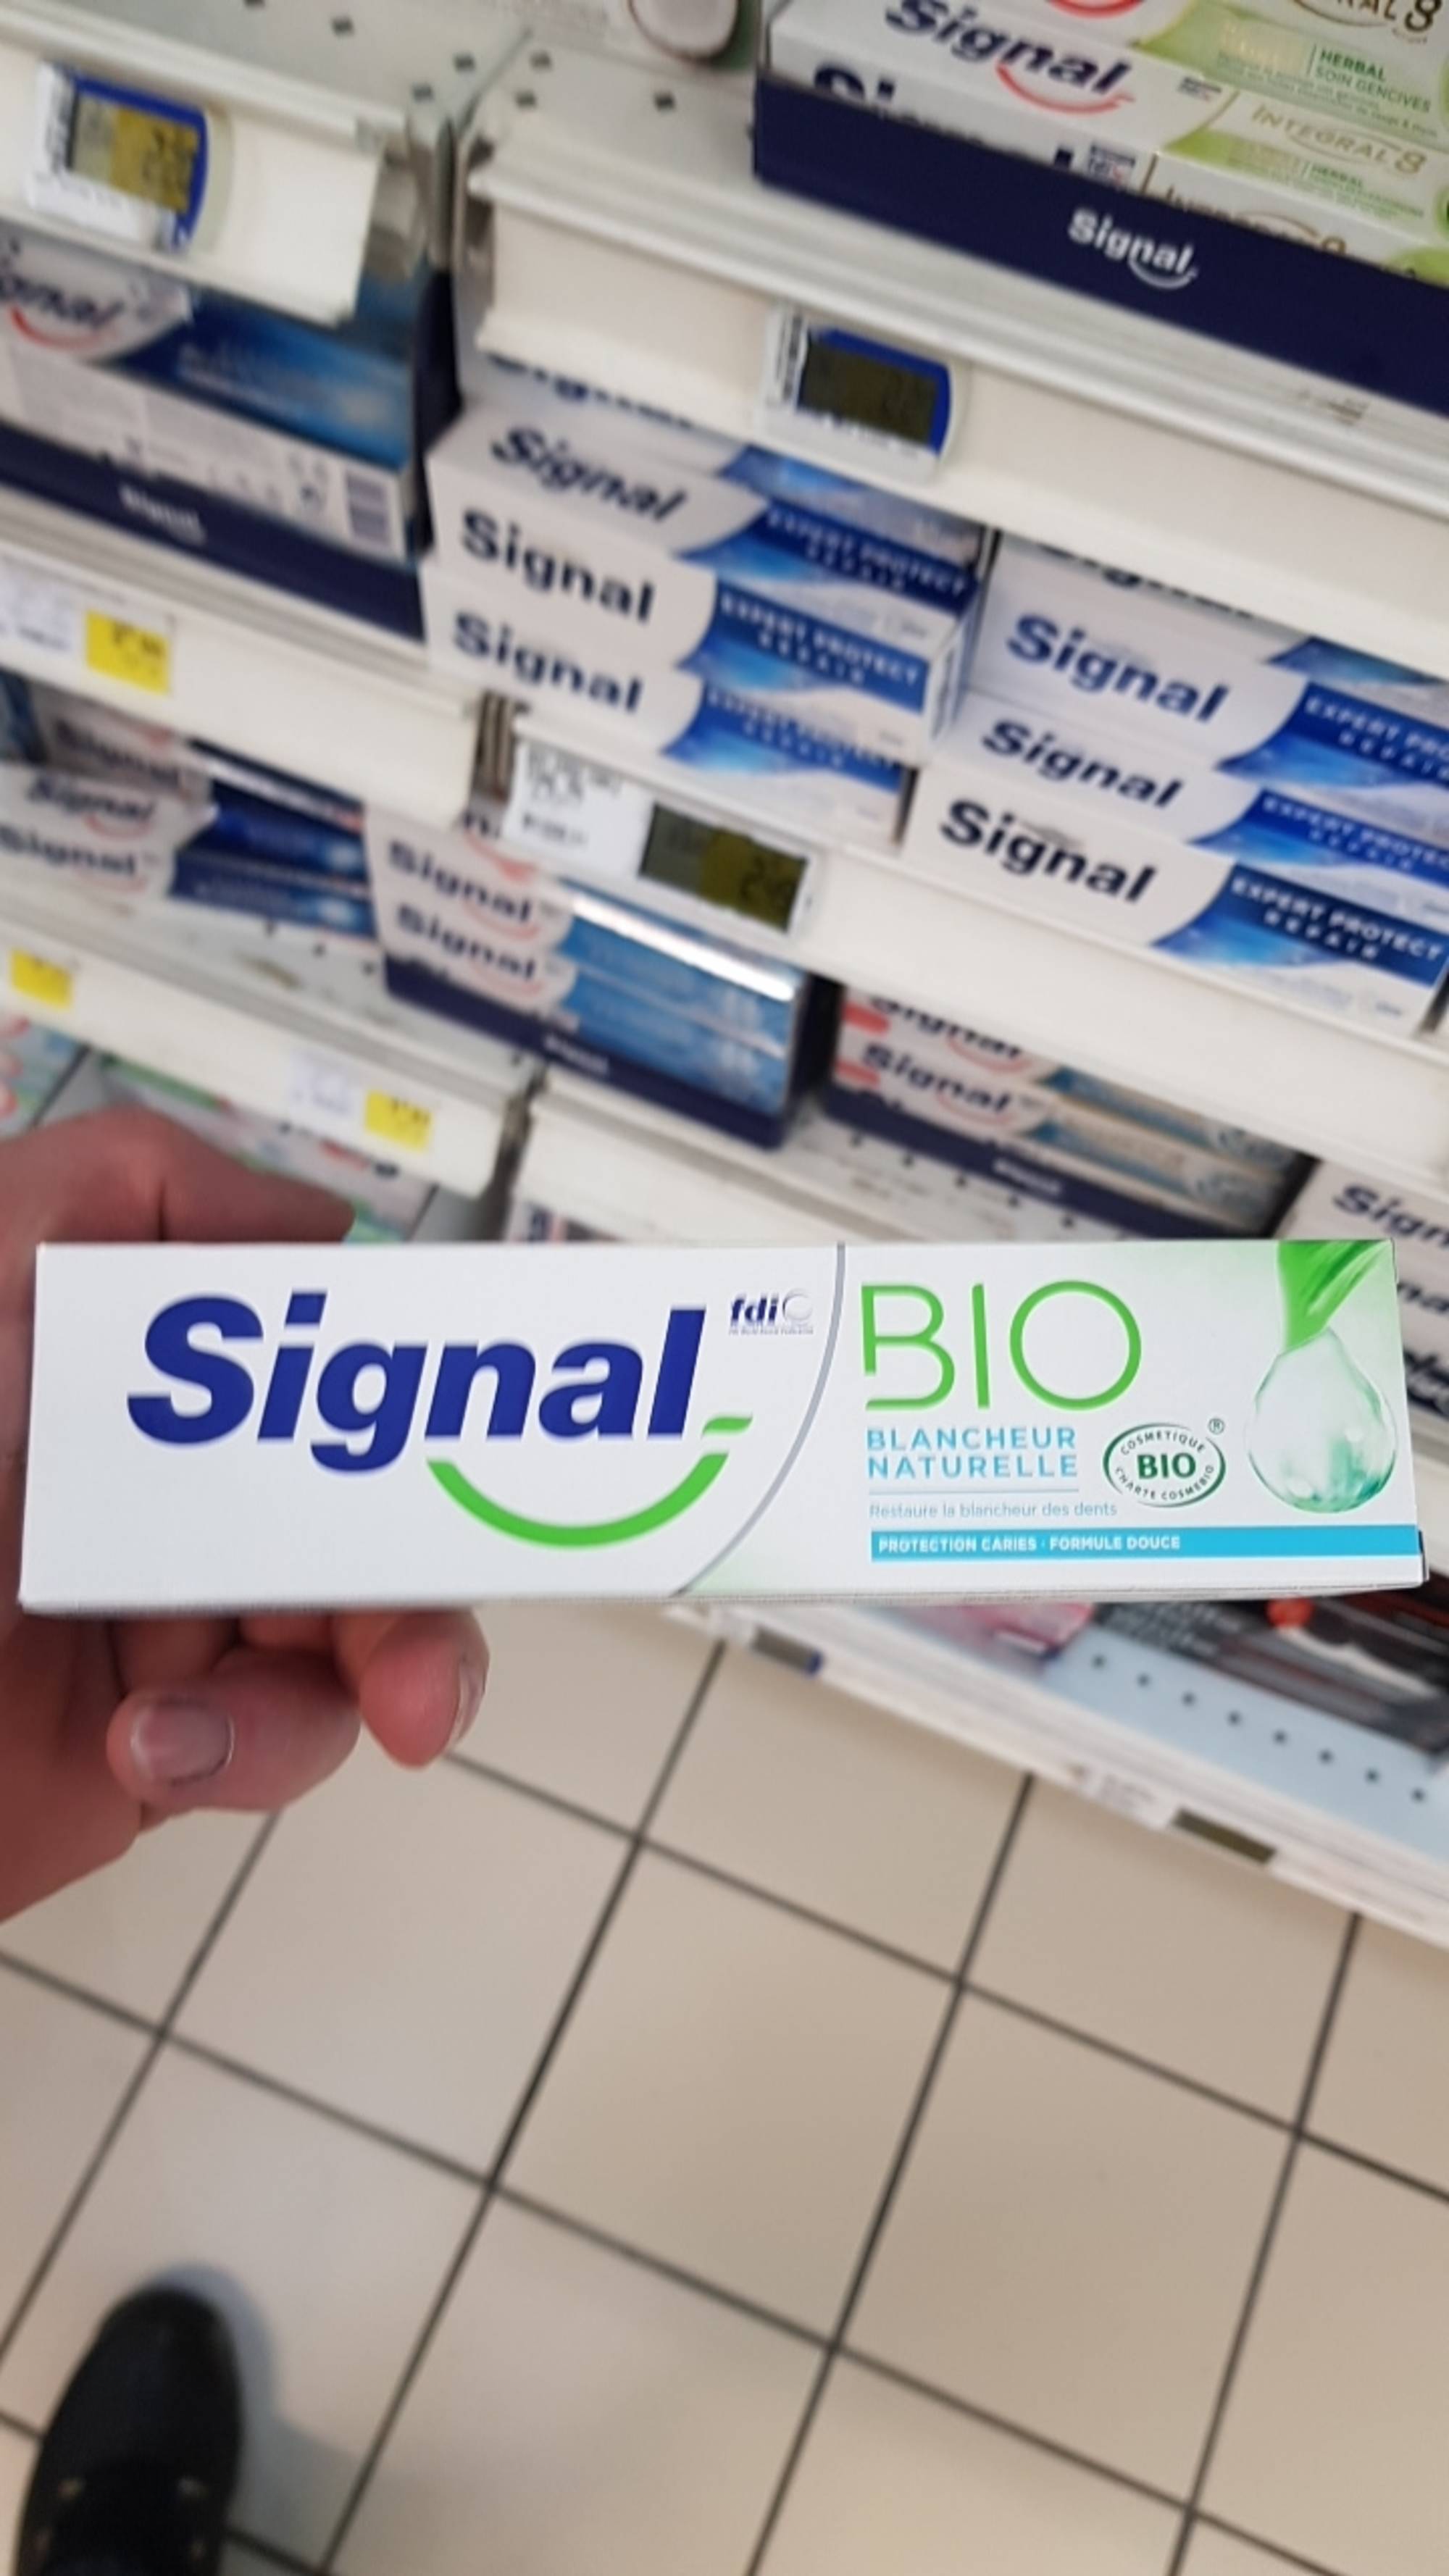 SIGNAL - Bio blancheur naturelle - Dentifrice